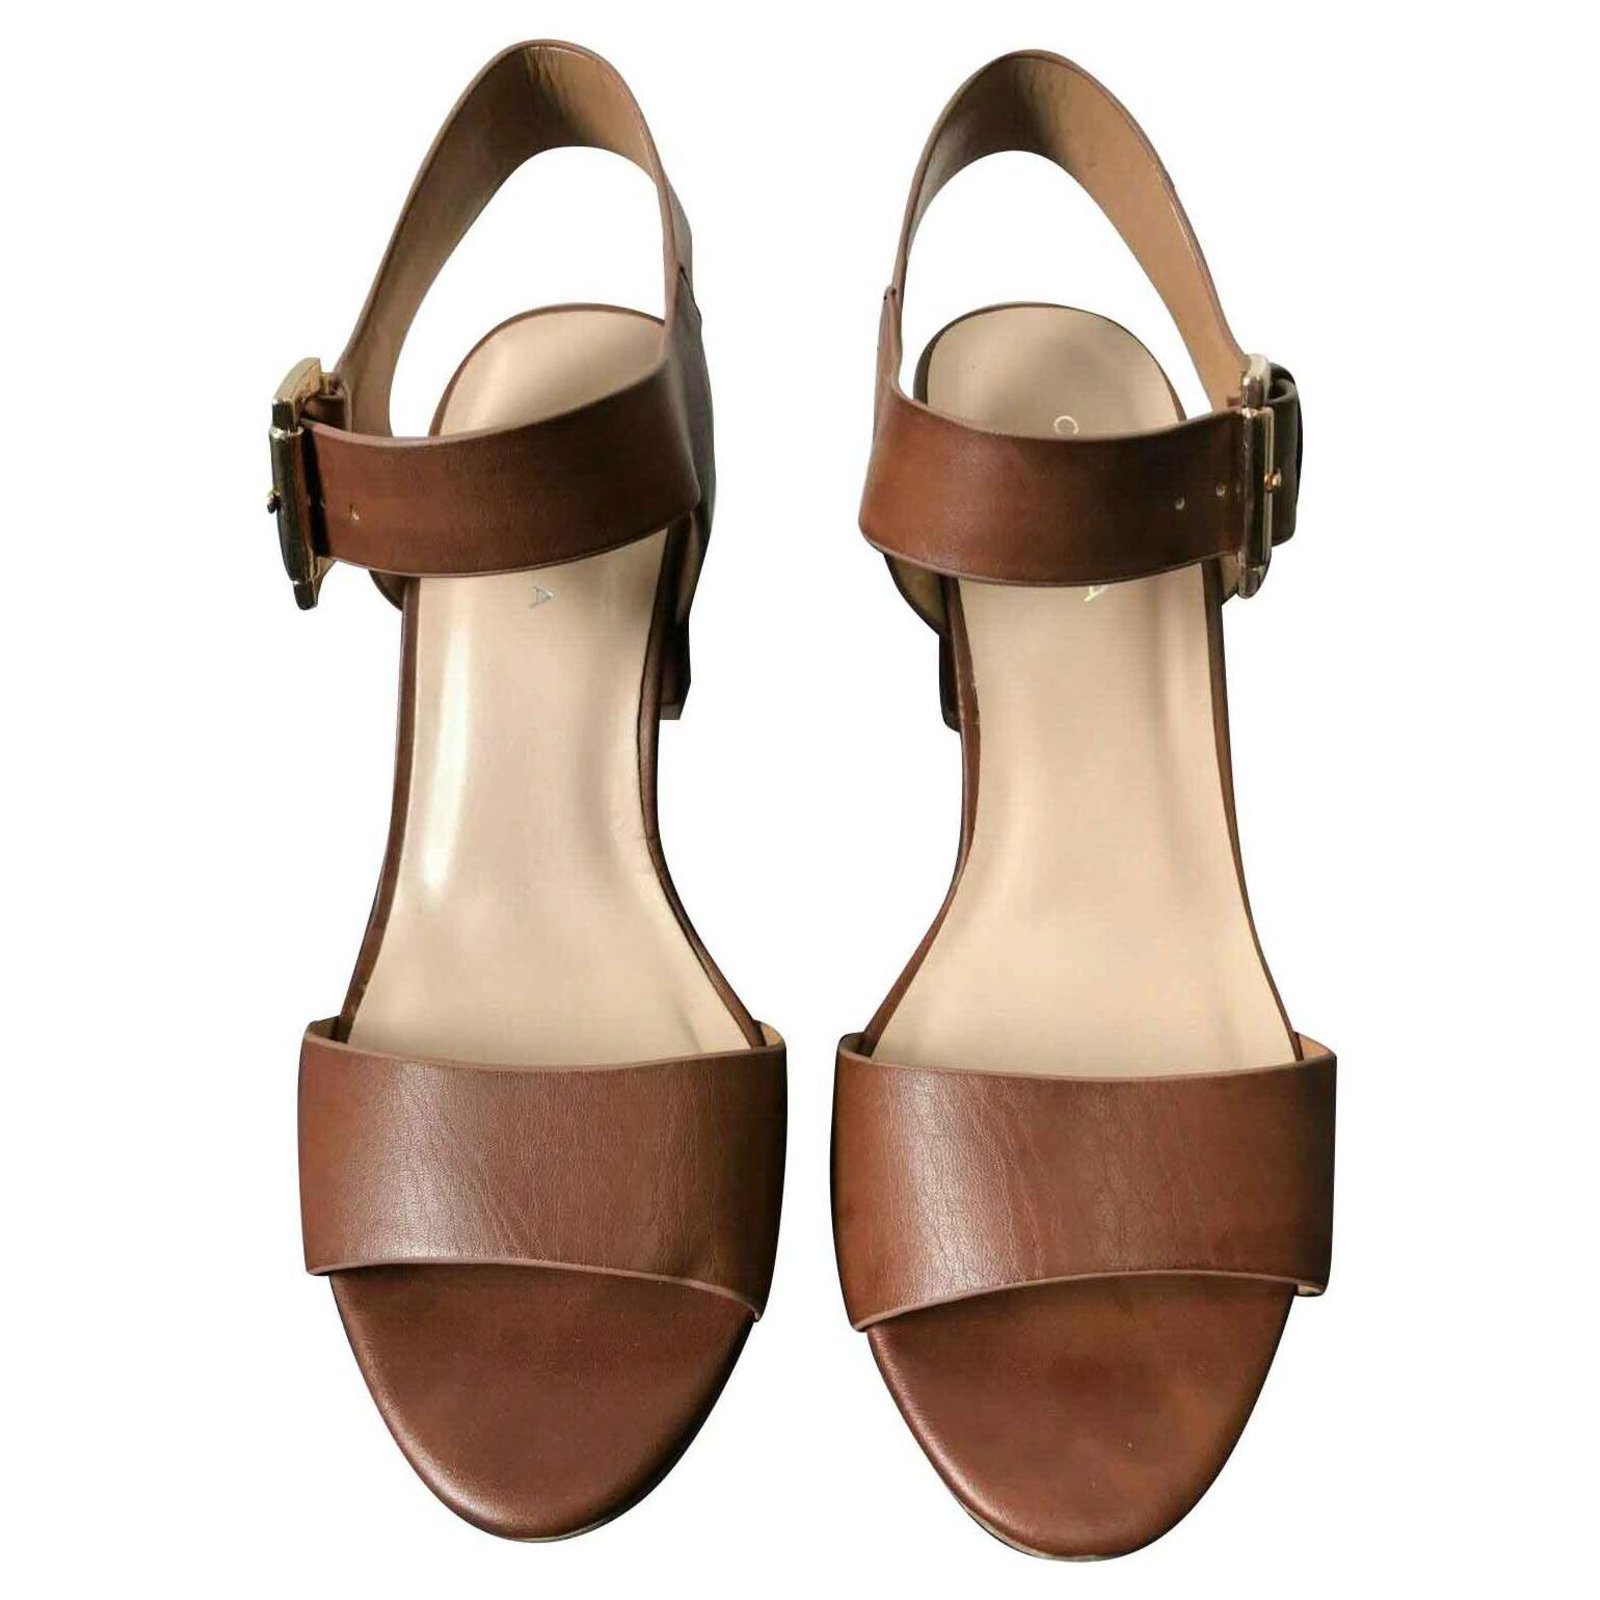 Tan Brown Sandal Heels - Buy Tan Brown Sandal Heels online in India